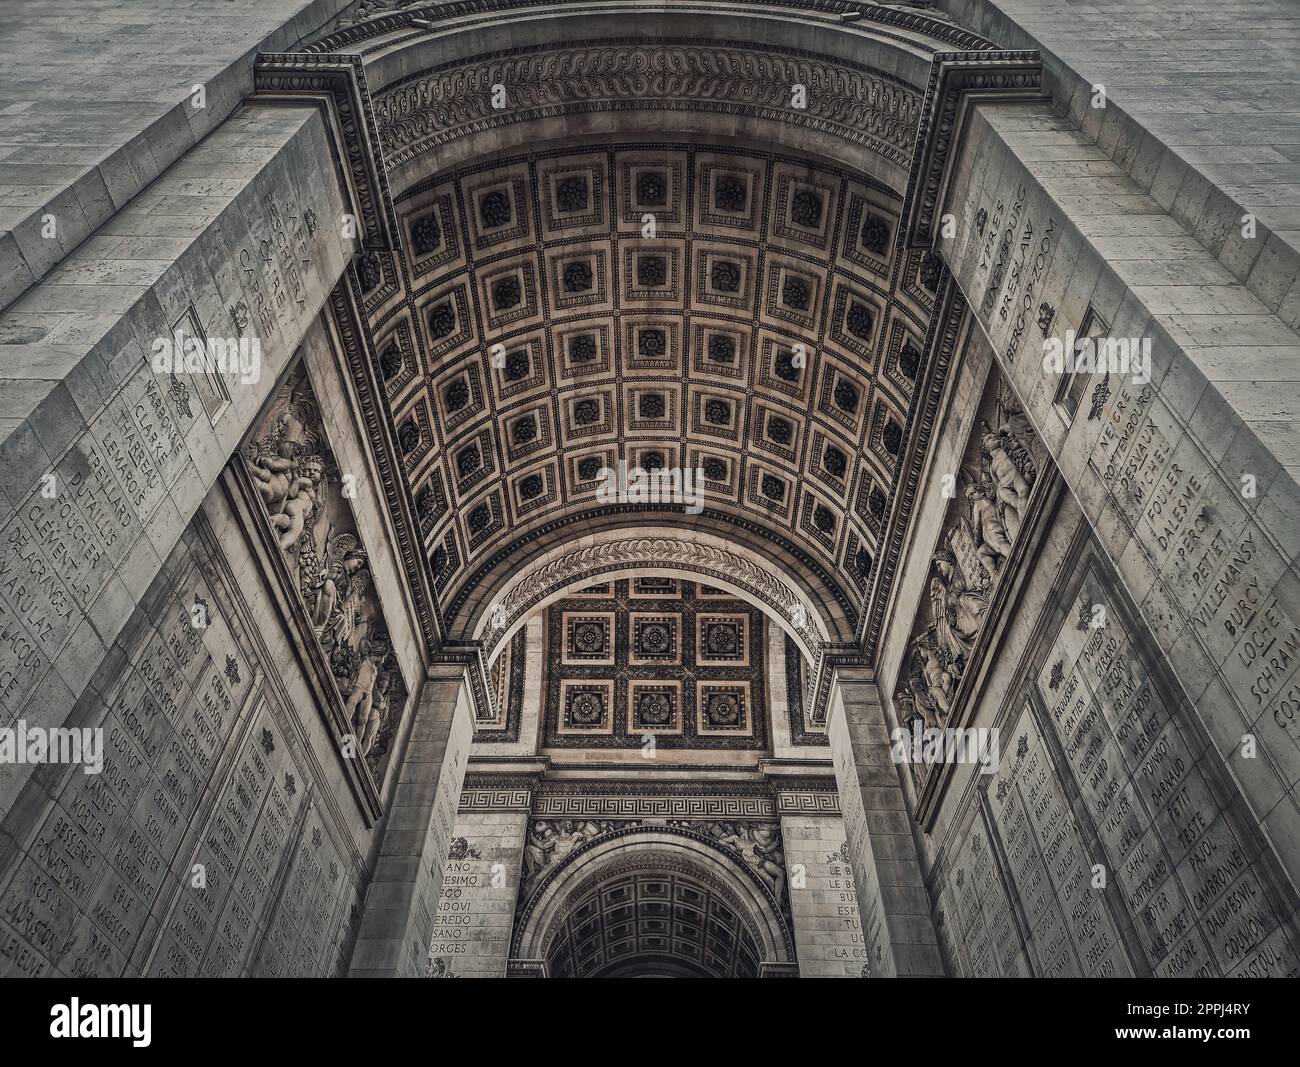 Vista sotto l'Arco Trionfale, a Parigi, in Francia. Dettagli architettonici del famoso Arco di trionfo. Foto Stock